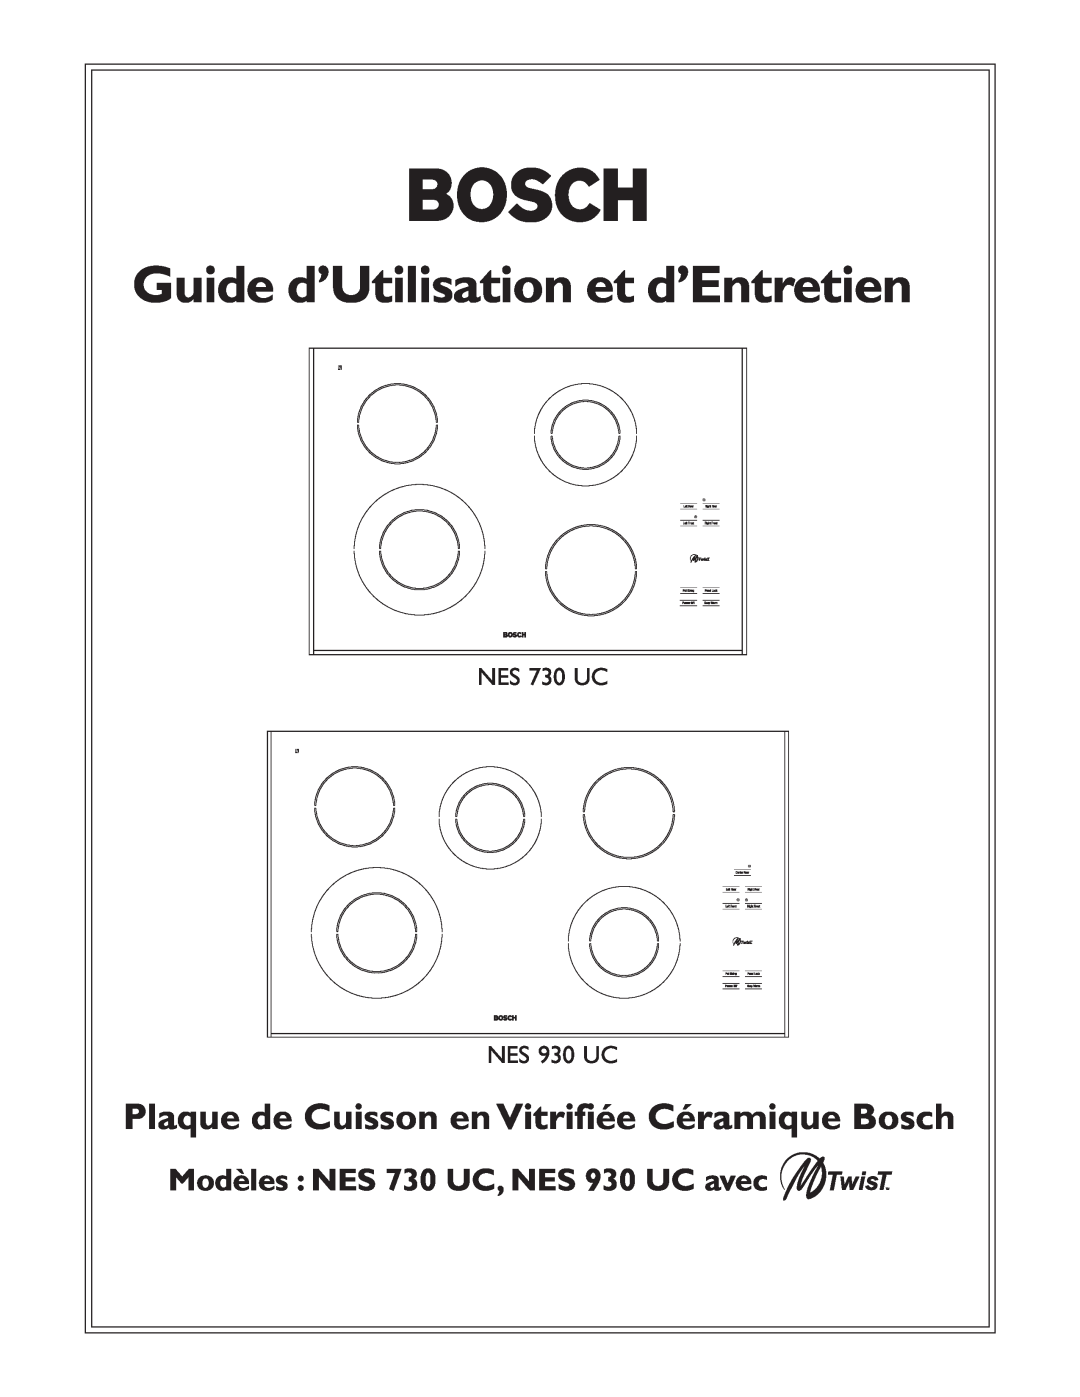 Bosch Appliances NES 730 UC, NES 930 UC Guide d’Utilisation et d’Entretien, Plaque de Cuisson en Vitrifiée Céramique Bosch 